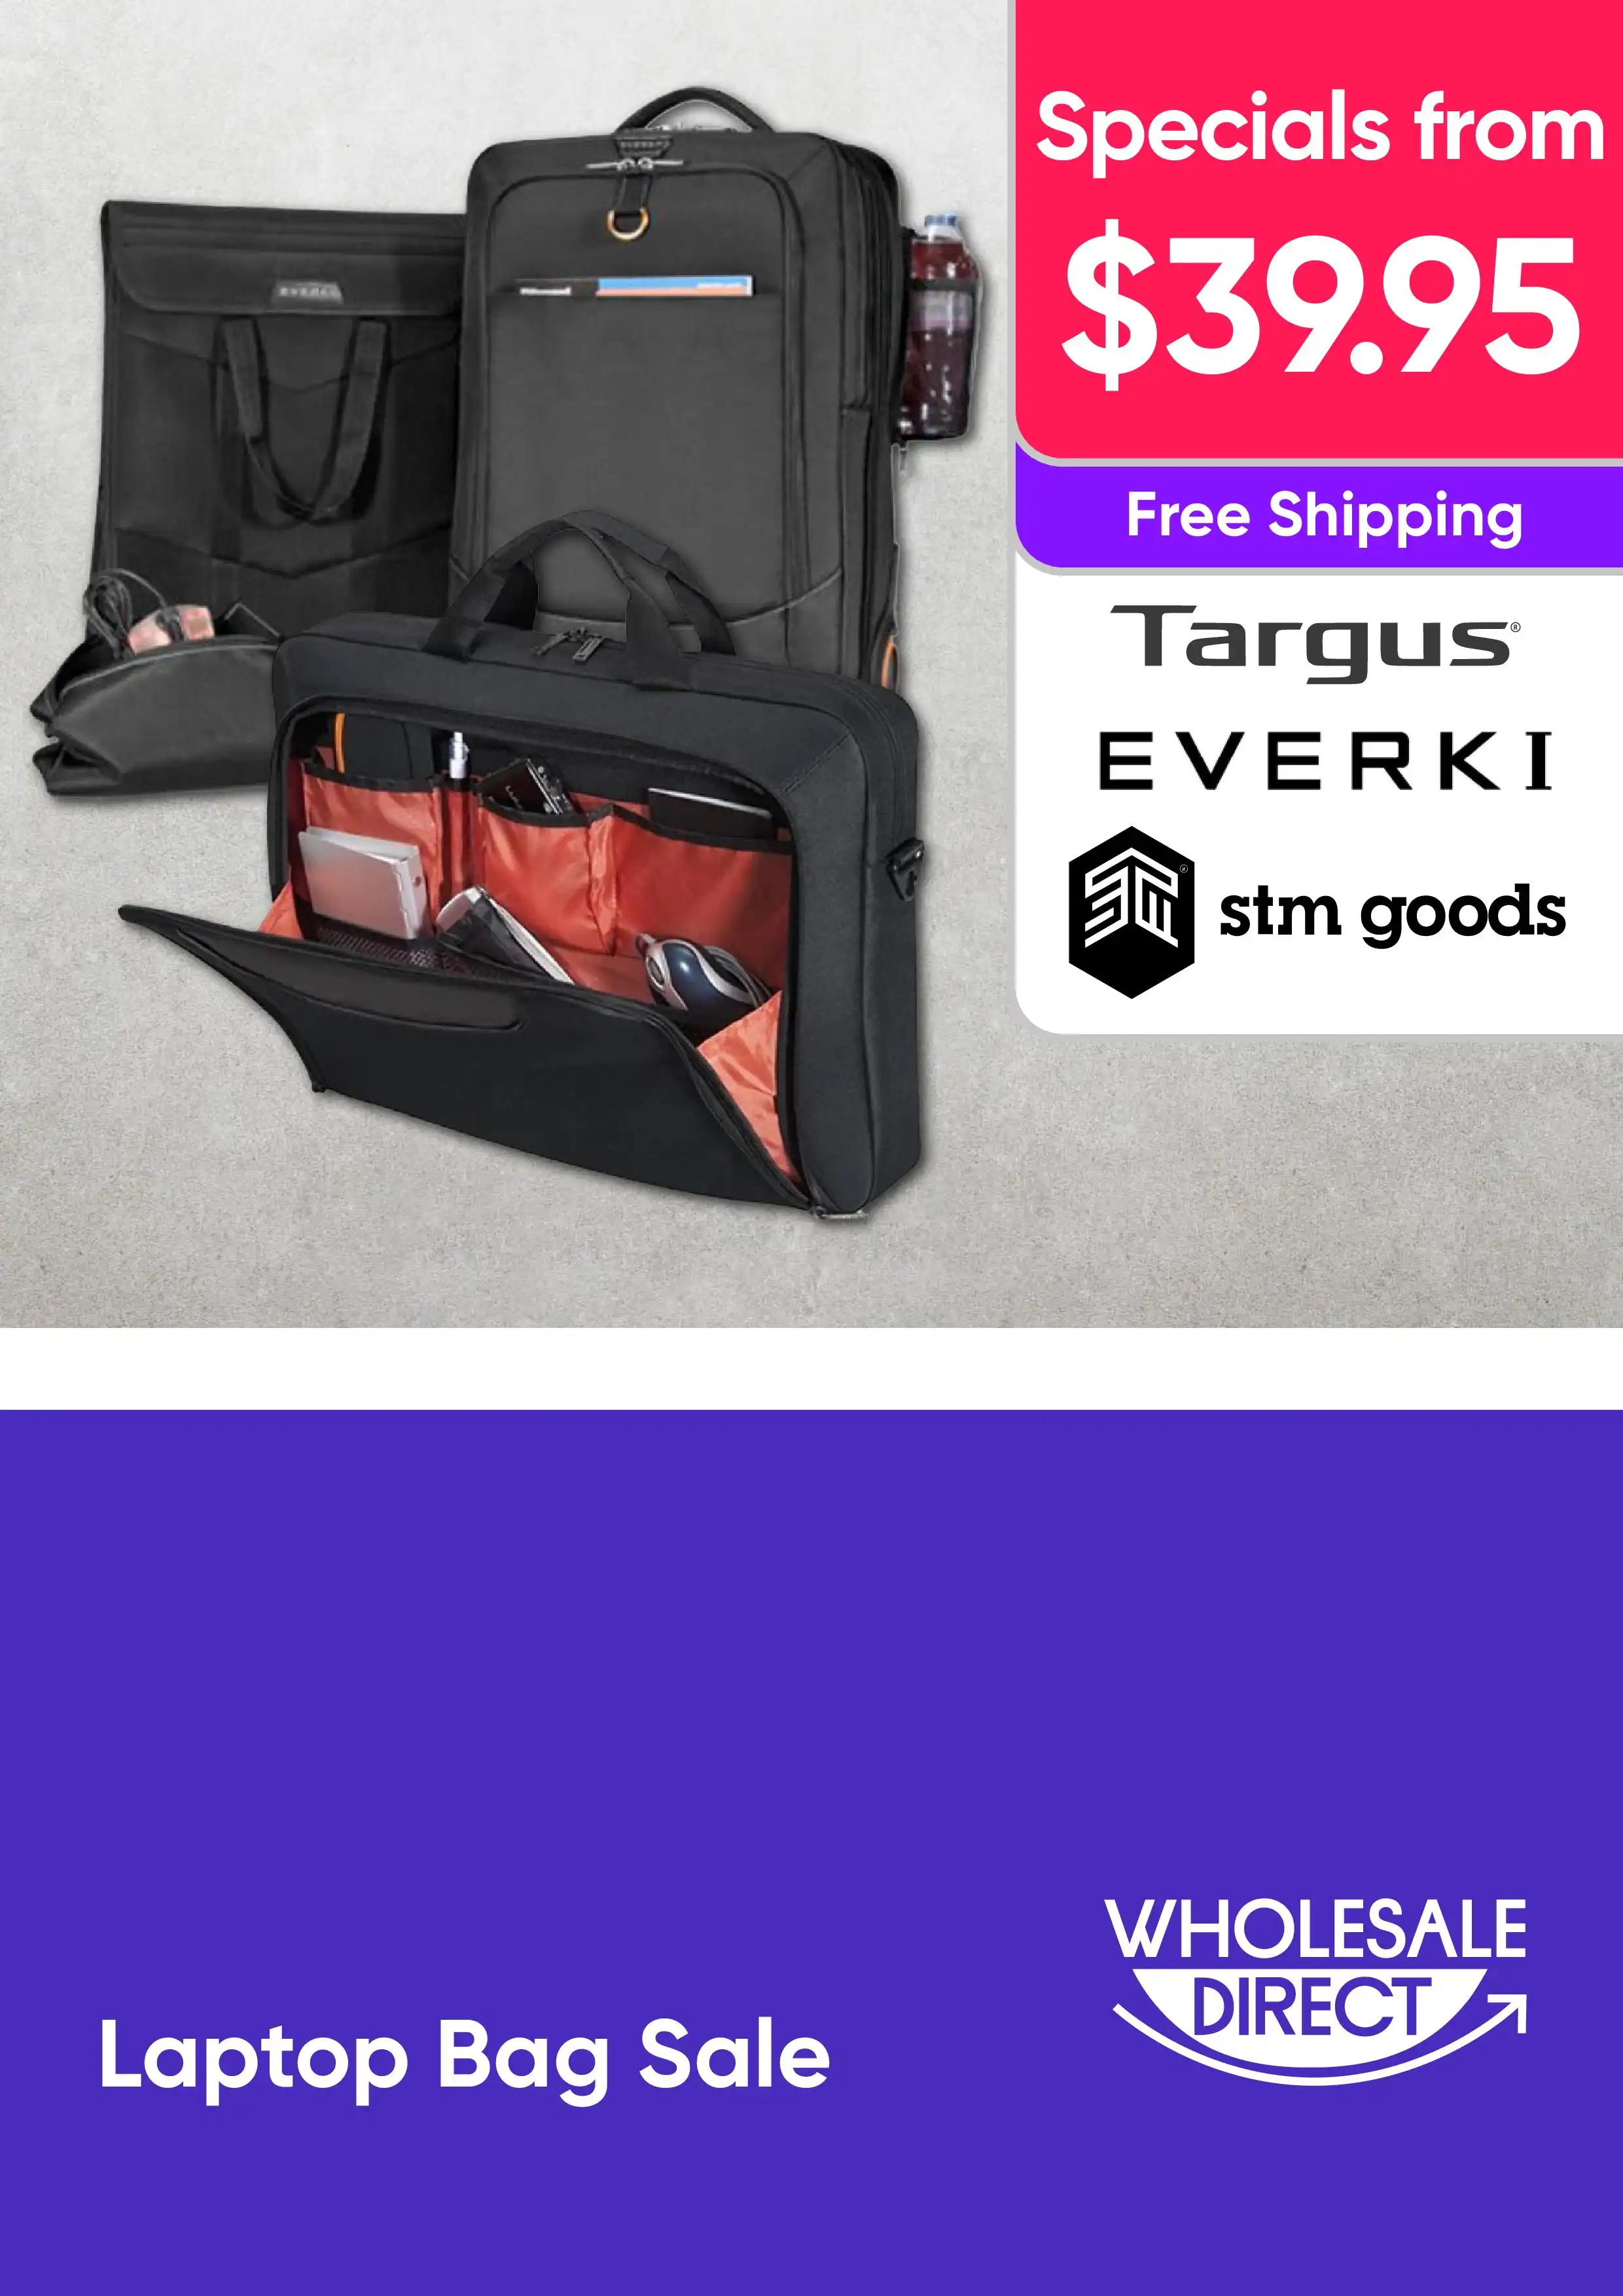 Laptop Bag Sale - Targus, Stm, Everki - specials from $39.95